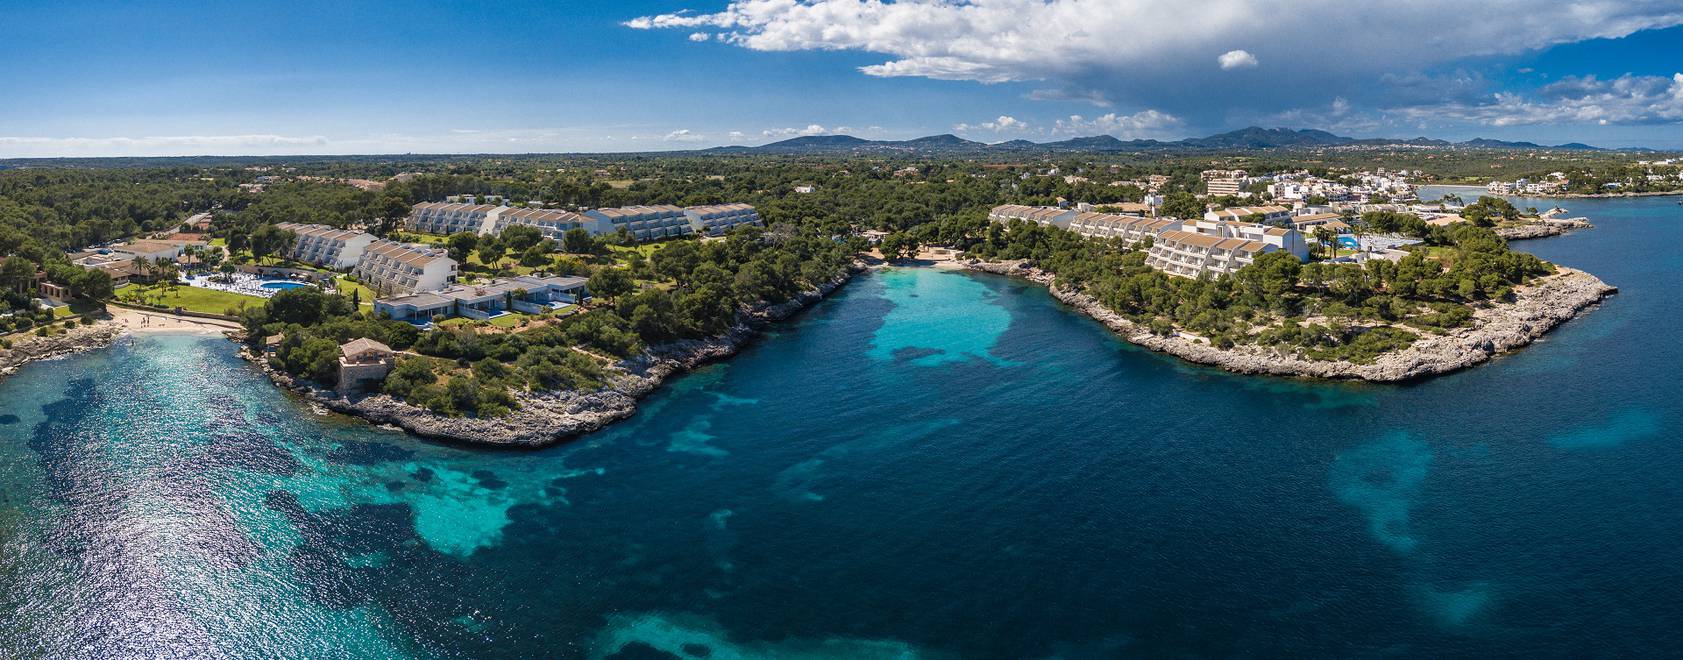 Blau hará nuevo resort lindero a su actual Natura Park de Punta Cana